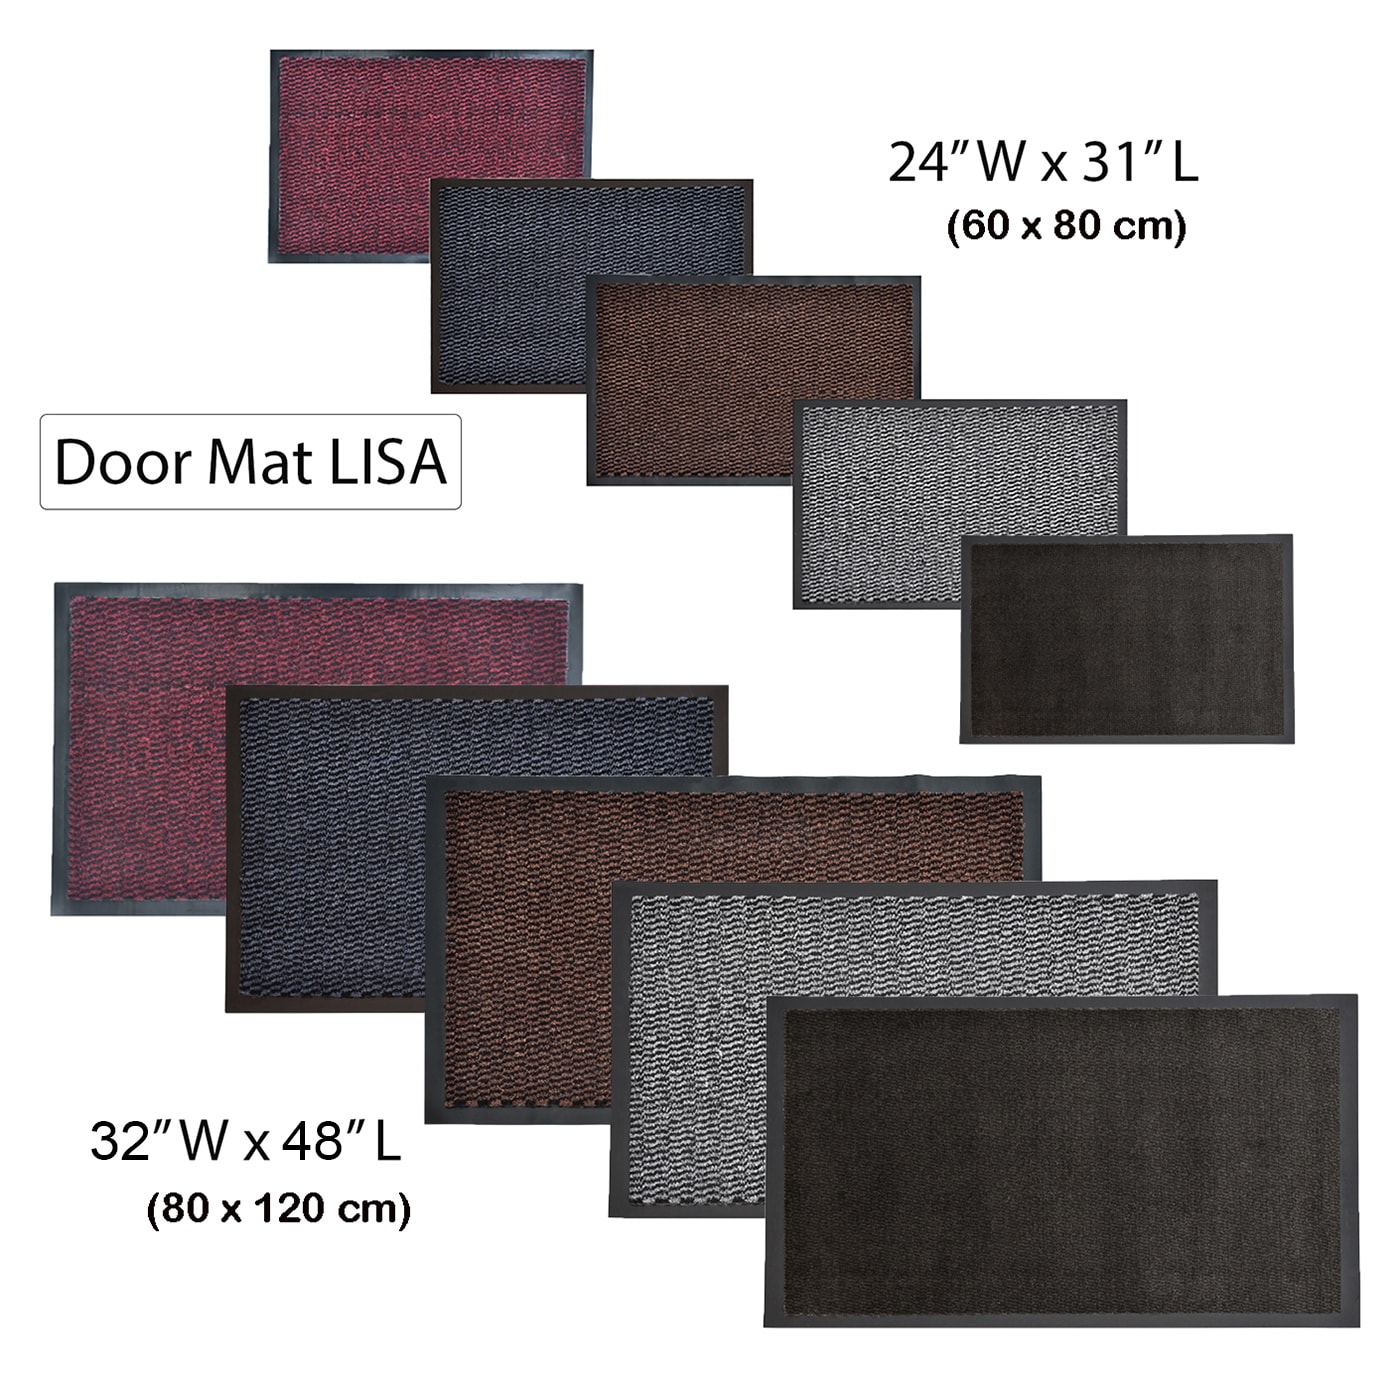 Mohawk Home Striped Utility Mat Charcoal Indoor/Outdoor 36 in. x 48 in. Utility Door Mat, Grey